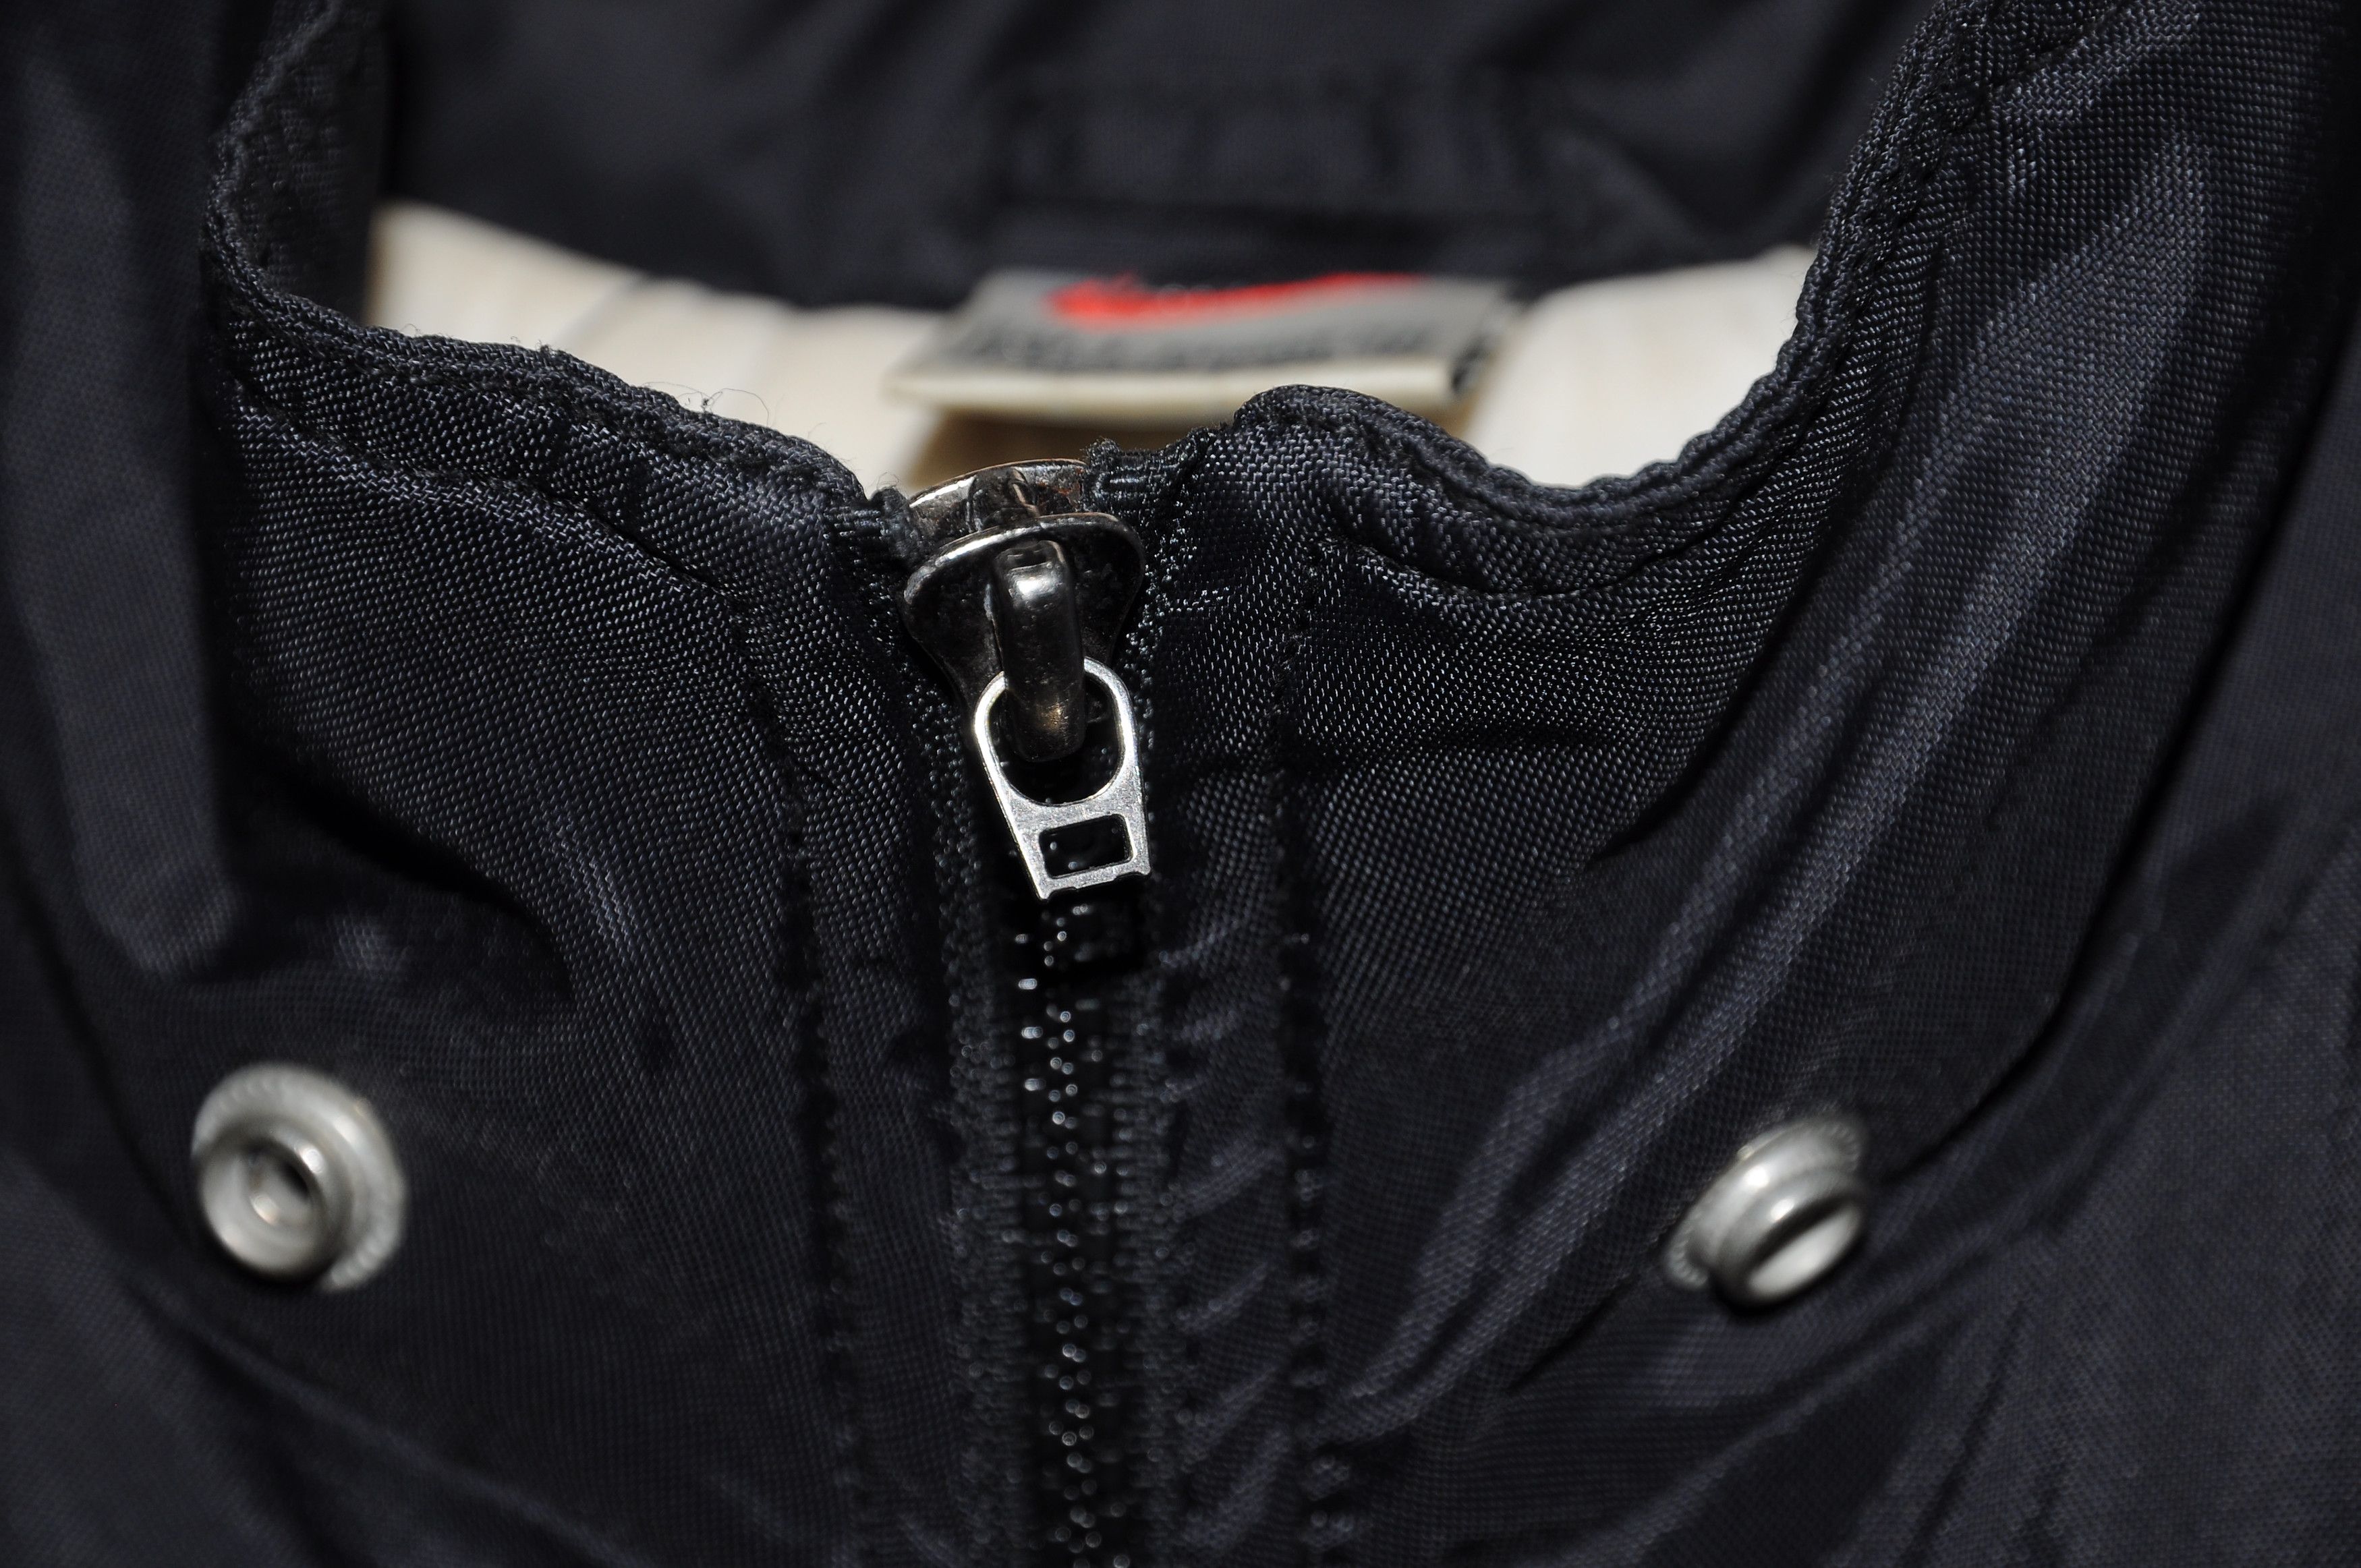 Nike vintage Nike mens Nylon Track Jacket Black White Retro 90s Size US S / EU 44-46 / 1 - 6 Thumbnail